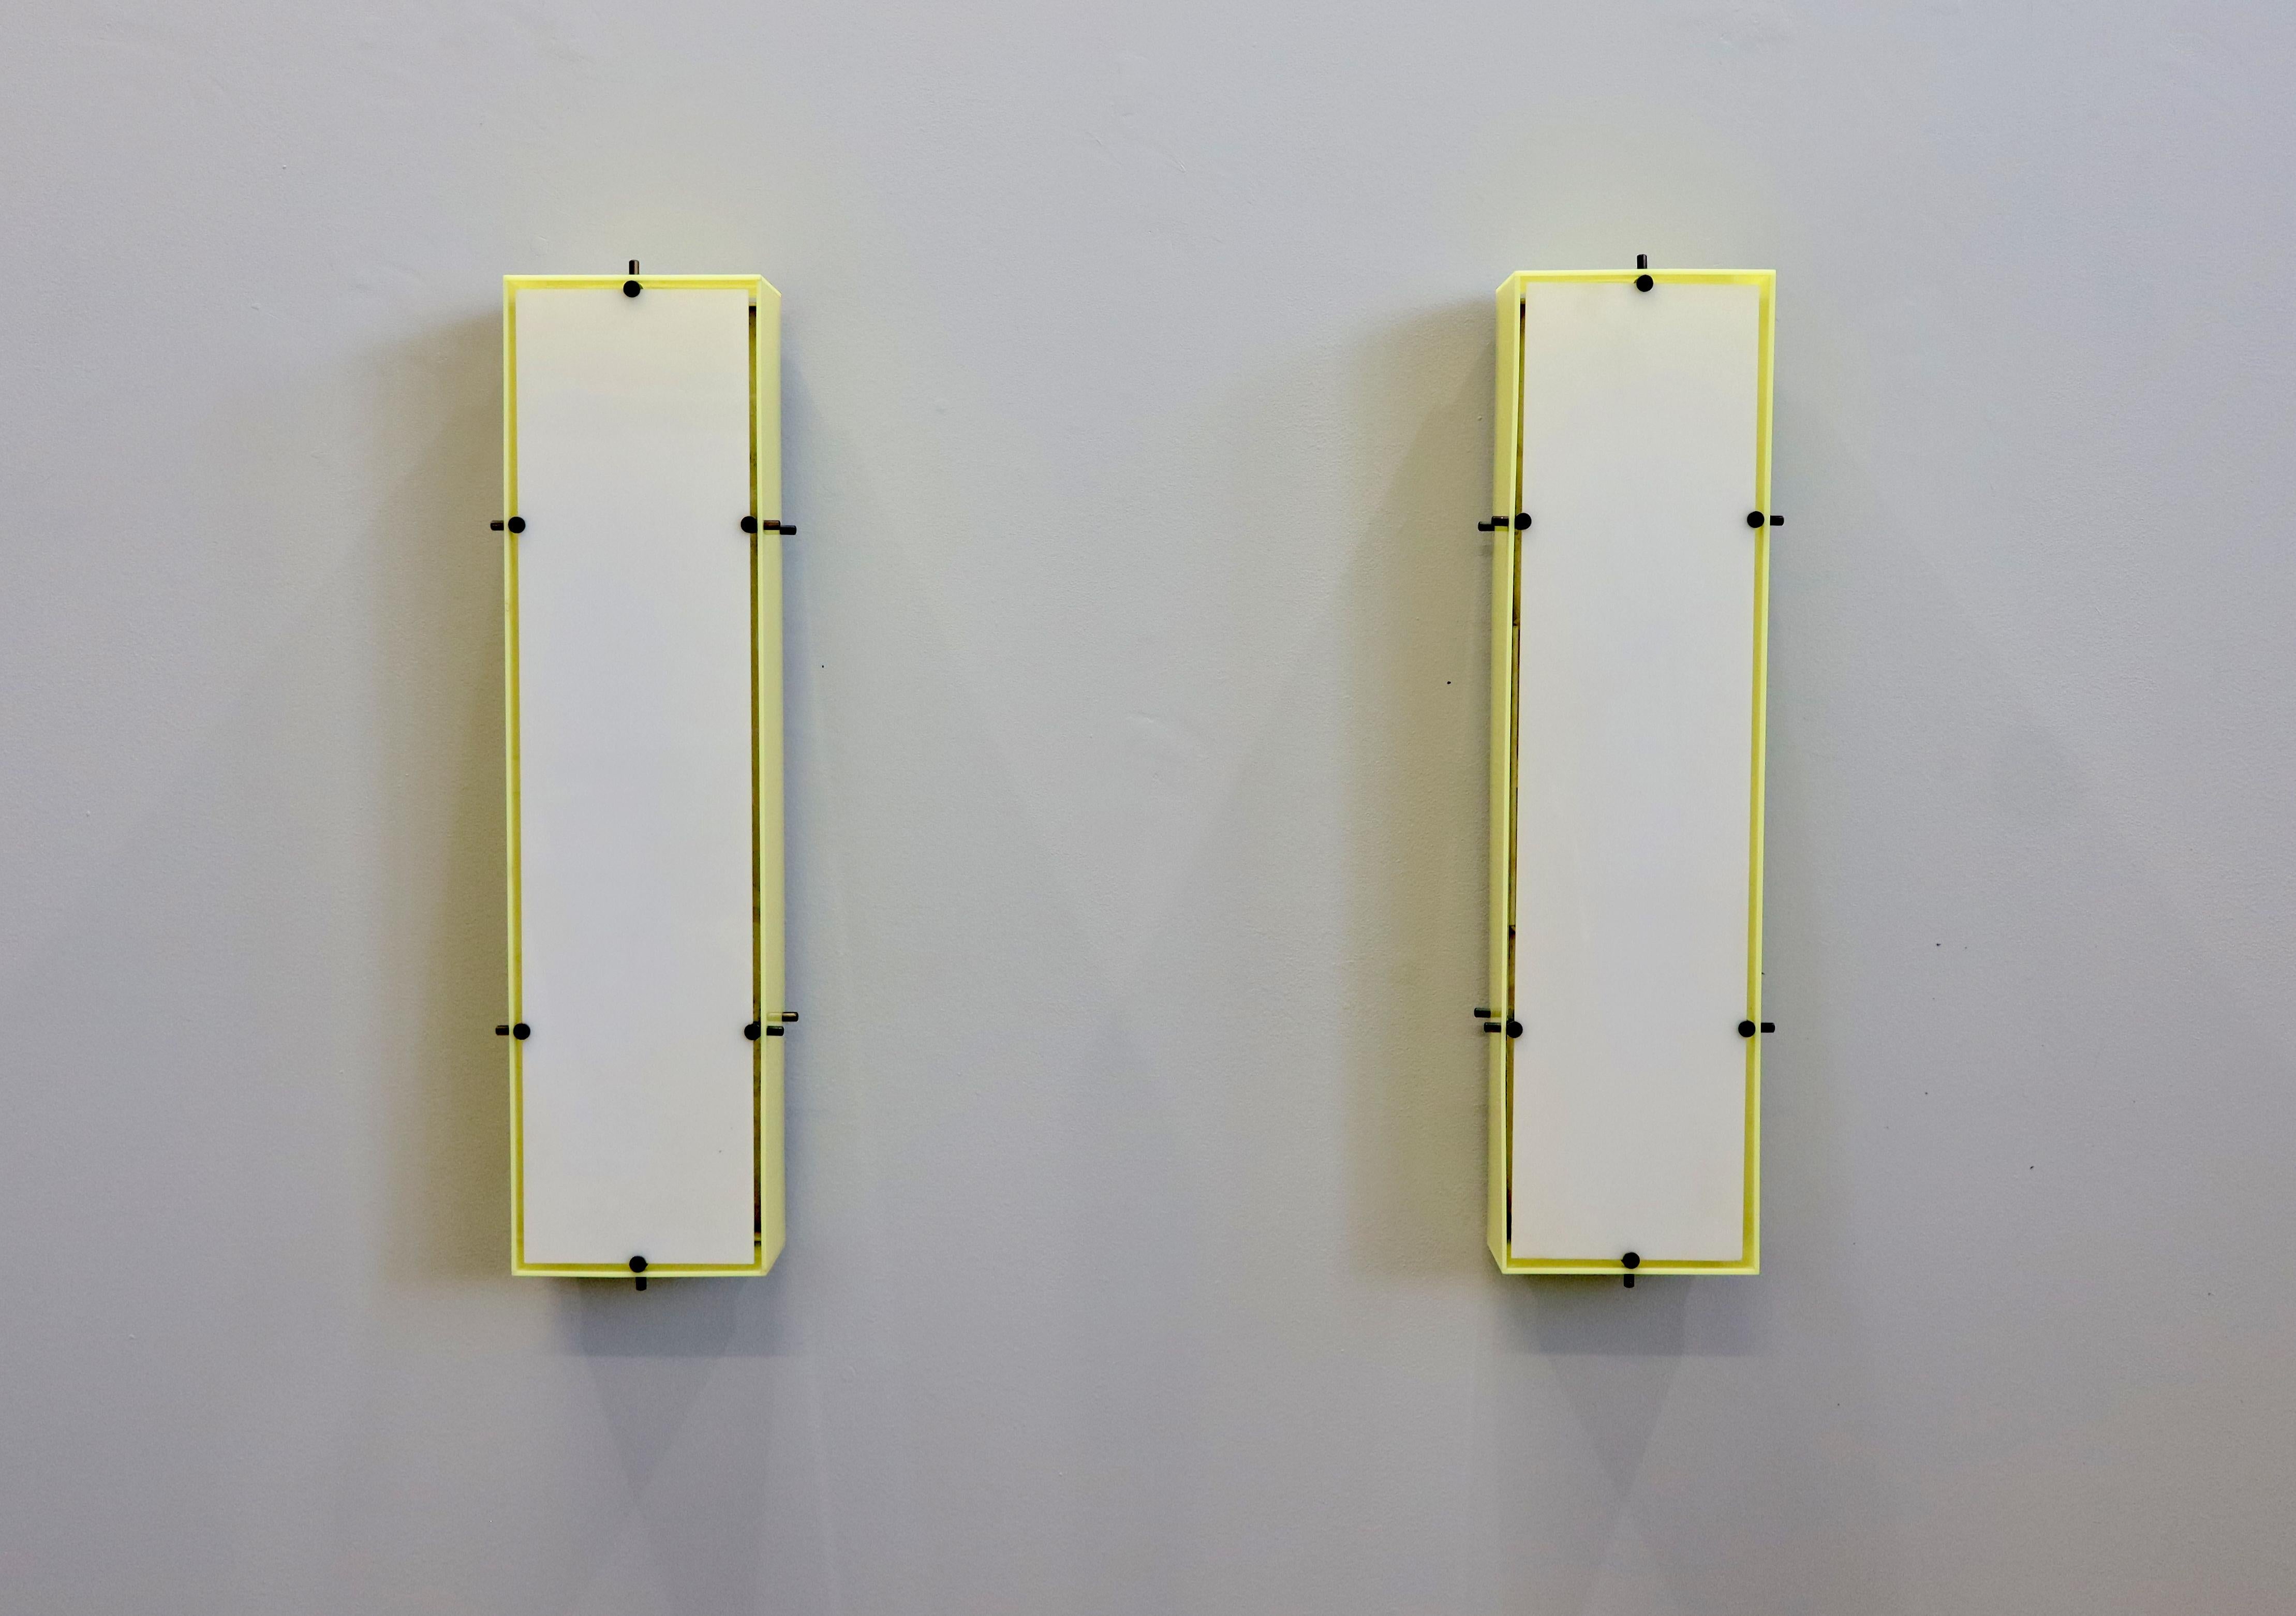 Quatre appliques murales/lampes conçues par Angelo Lelii pour Arredoluce, Italie, années 1950. Plaque arrière en métal avec côtés en plexiglas jaune et façade en plexiglas blanc. Les étiquettes originales du fabricant sont présentes.